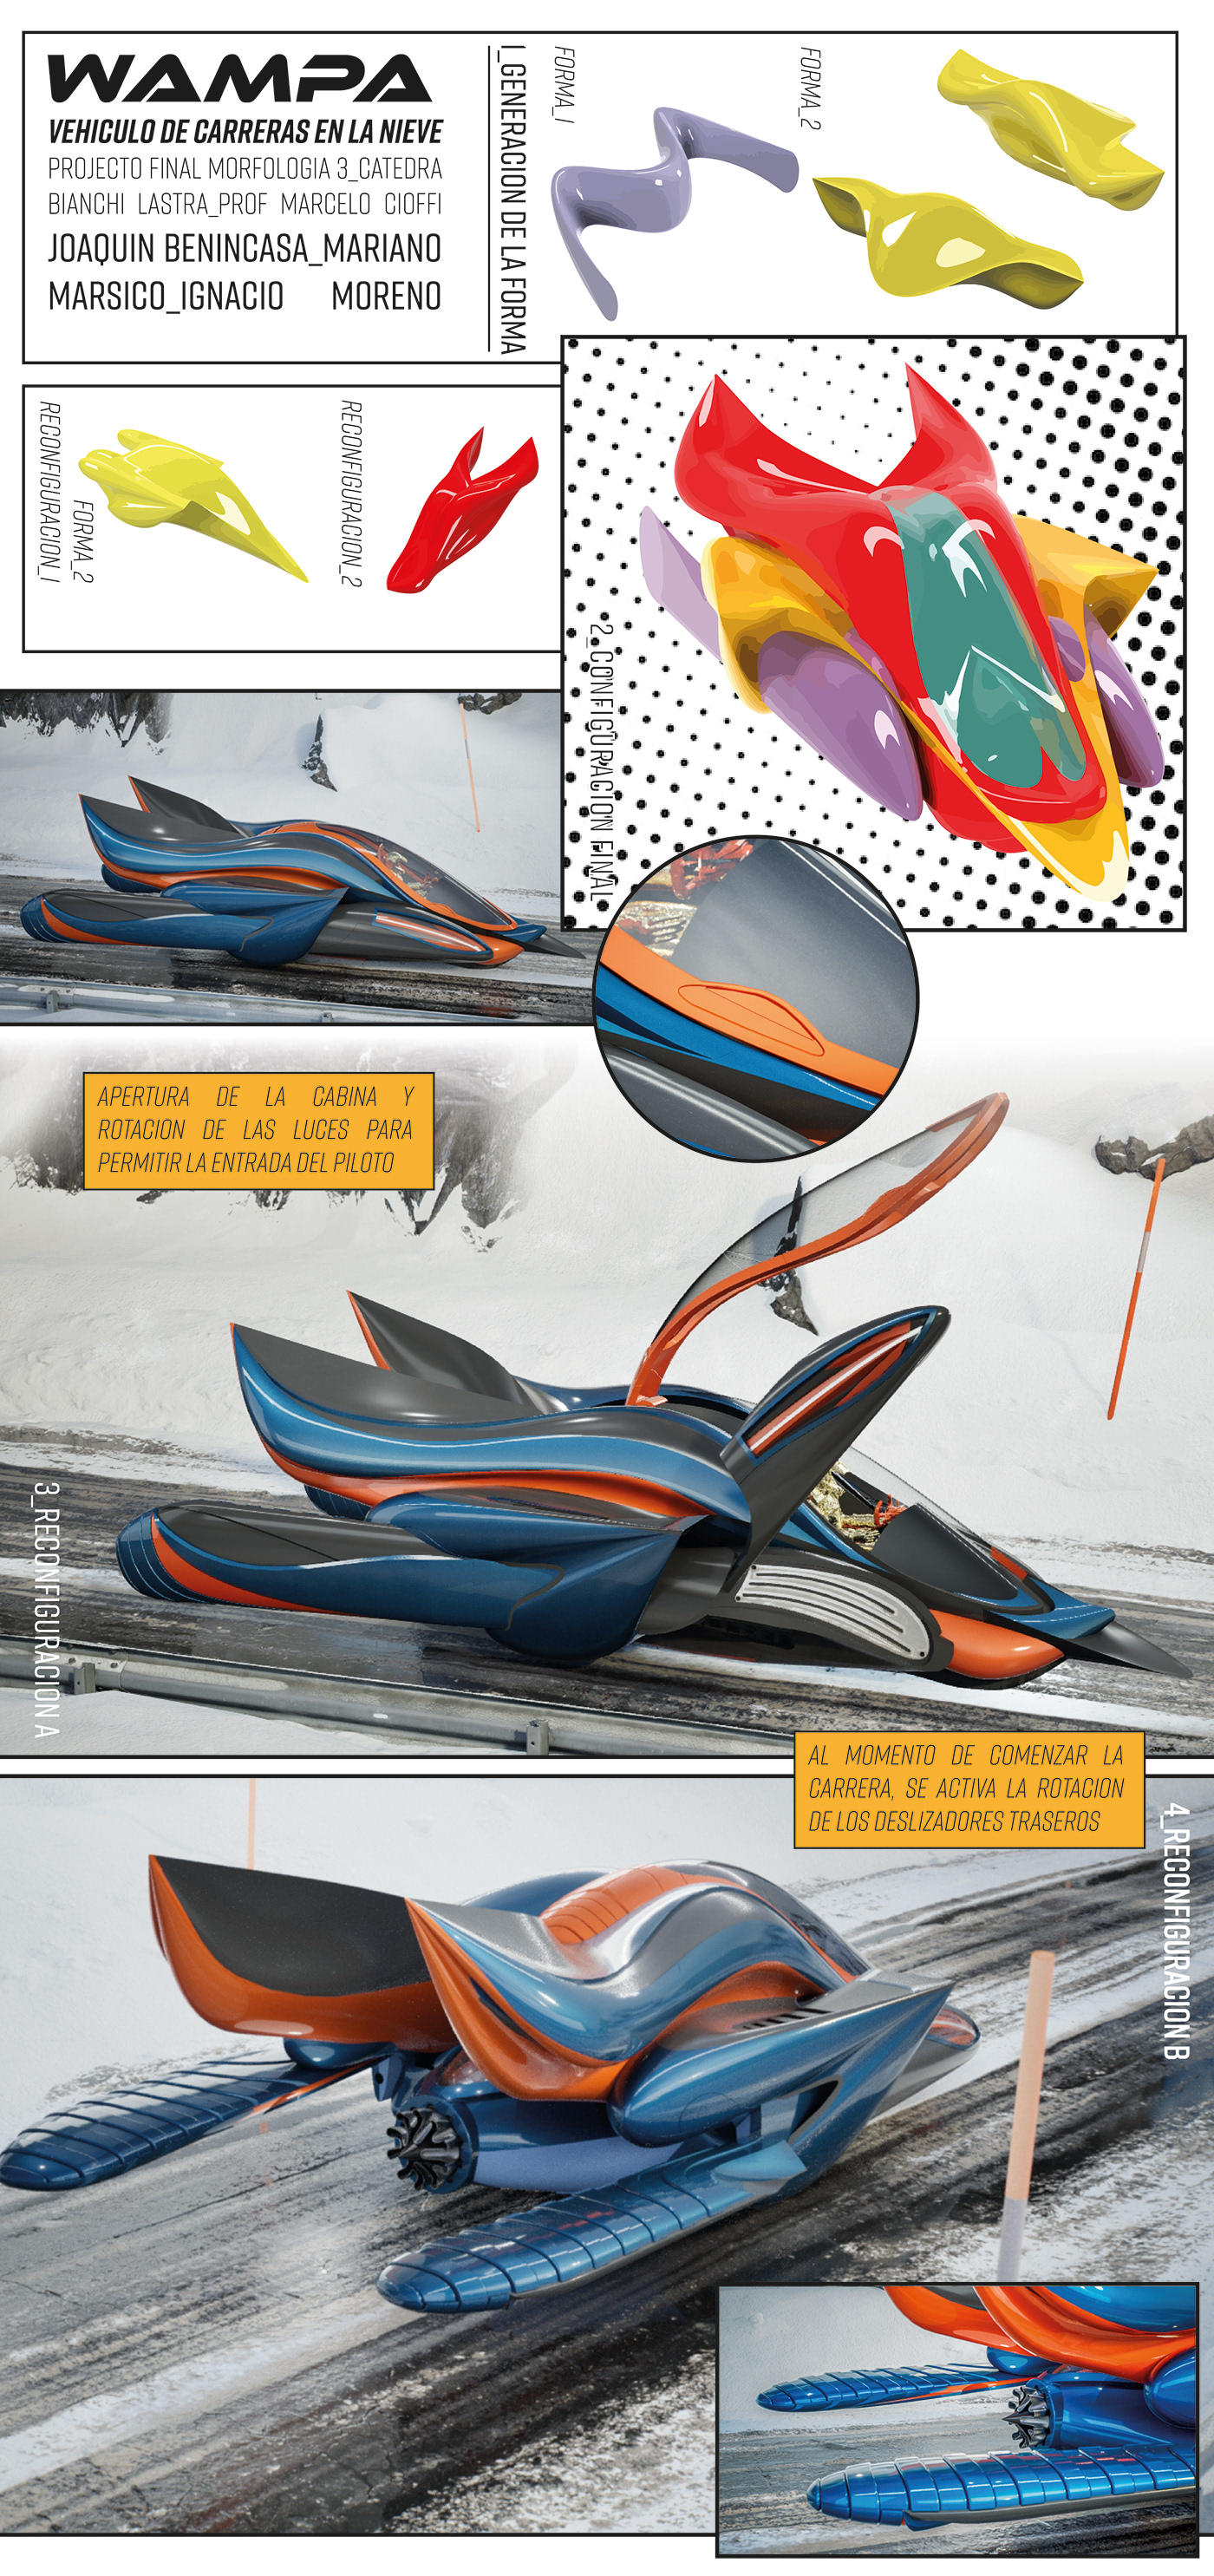 sketch morfologia modelado 3d Render diseño gráfico prototype Maqueta f1 carreras nieve